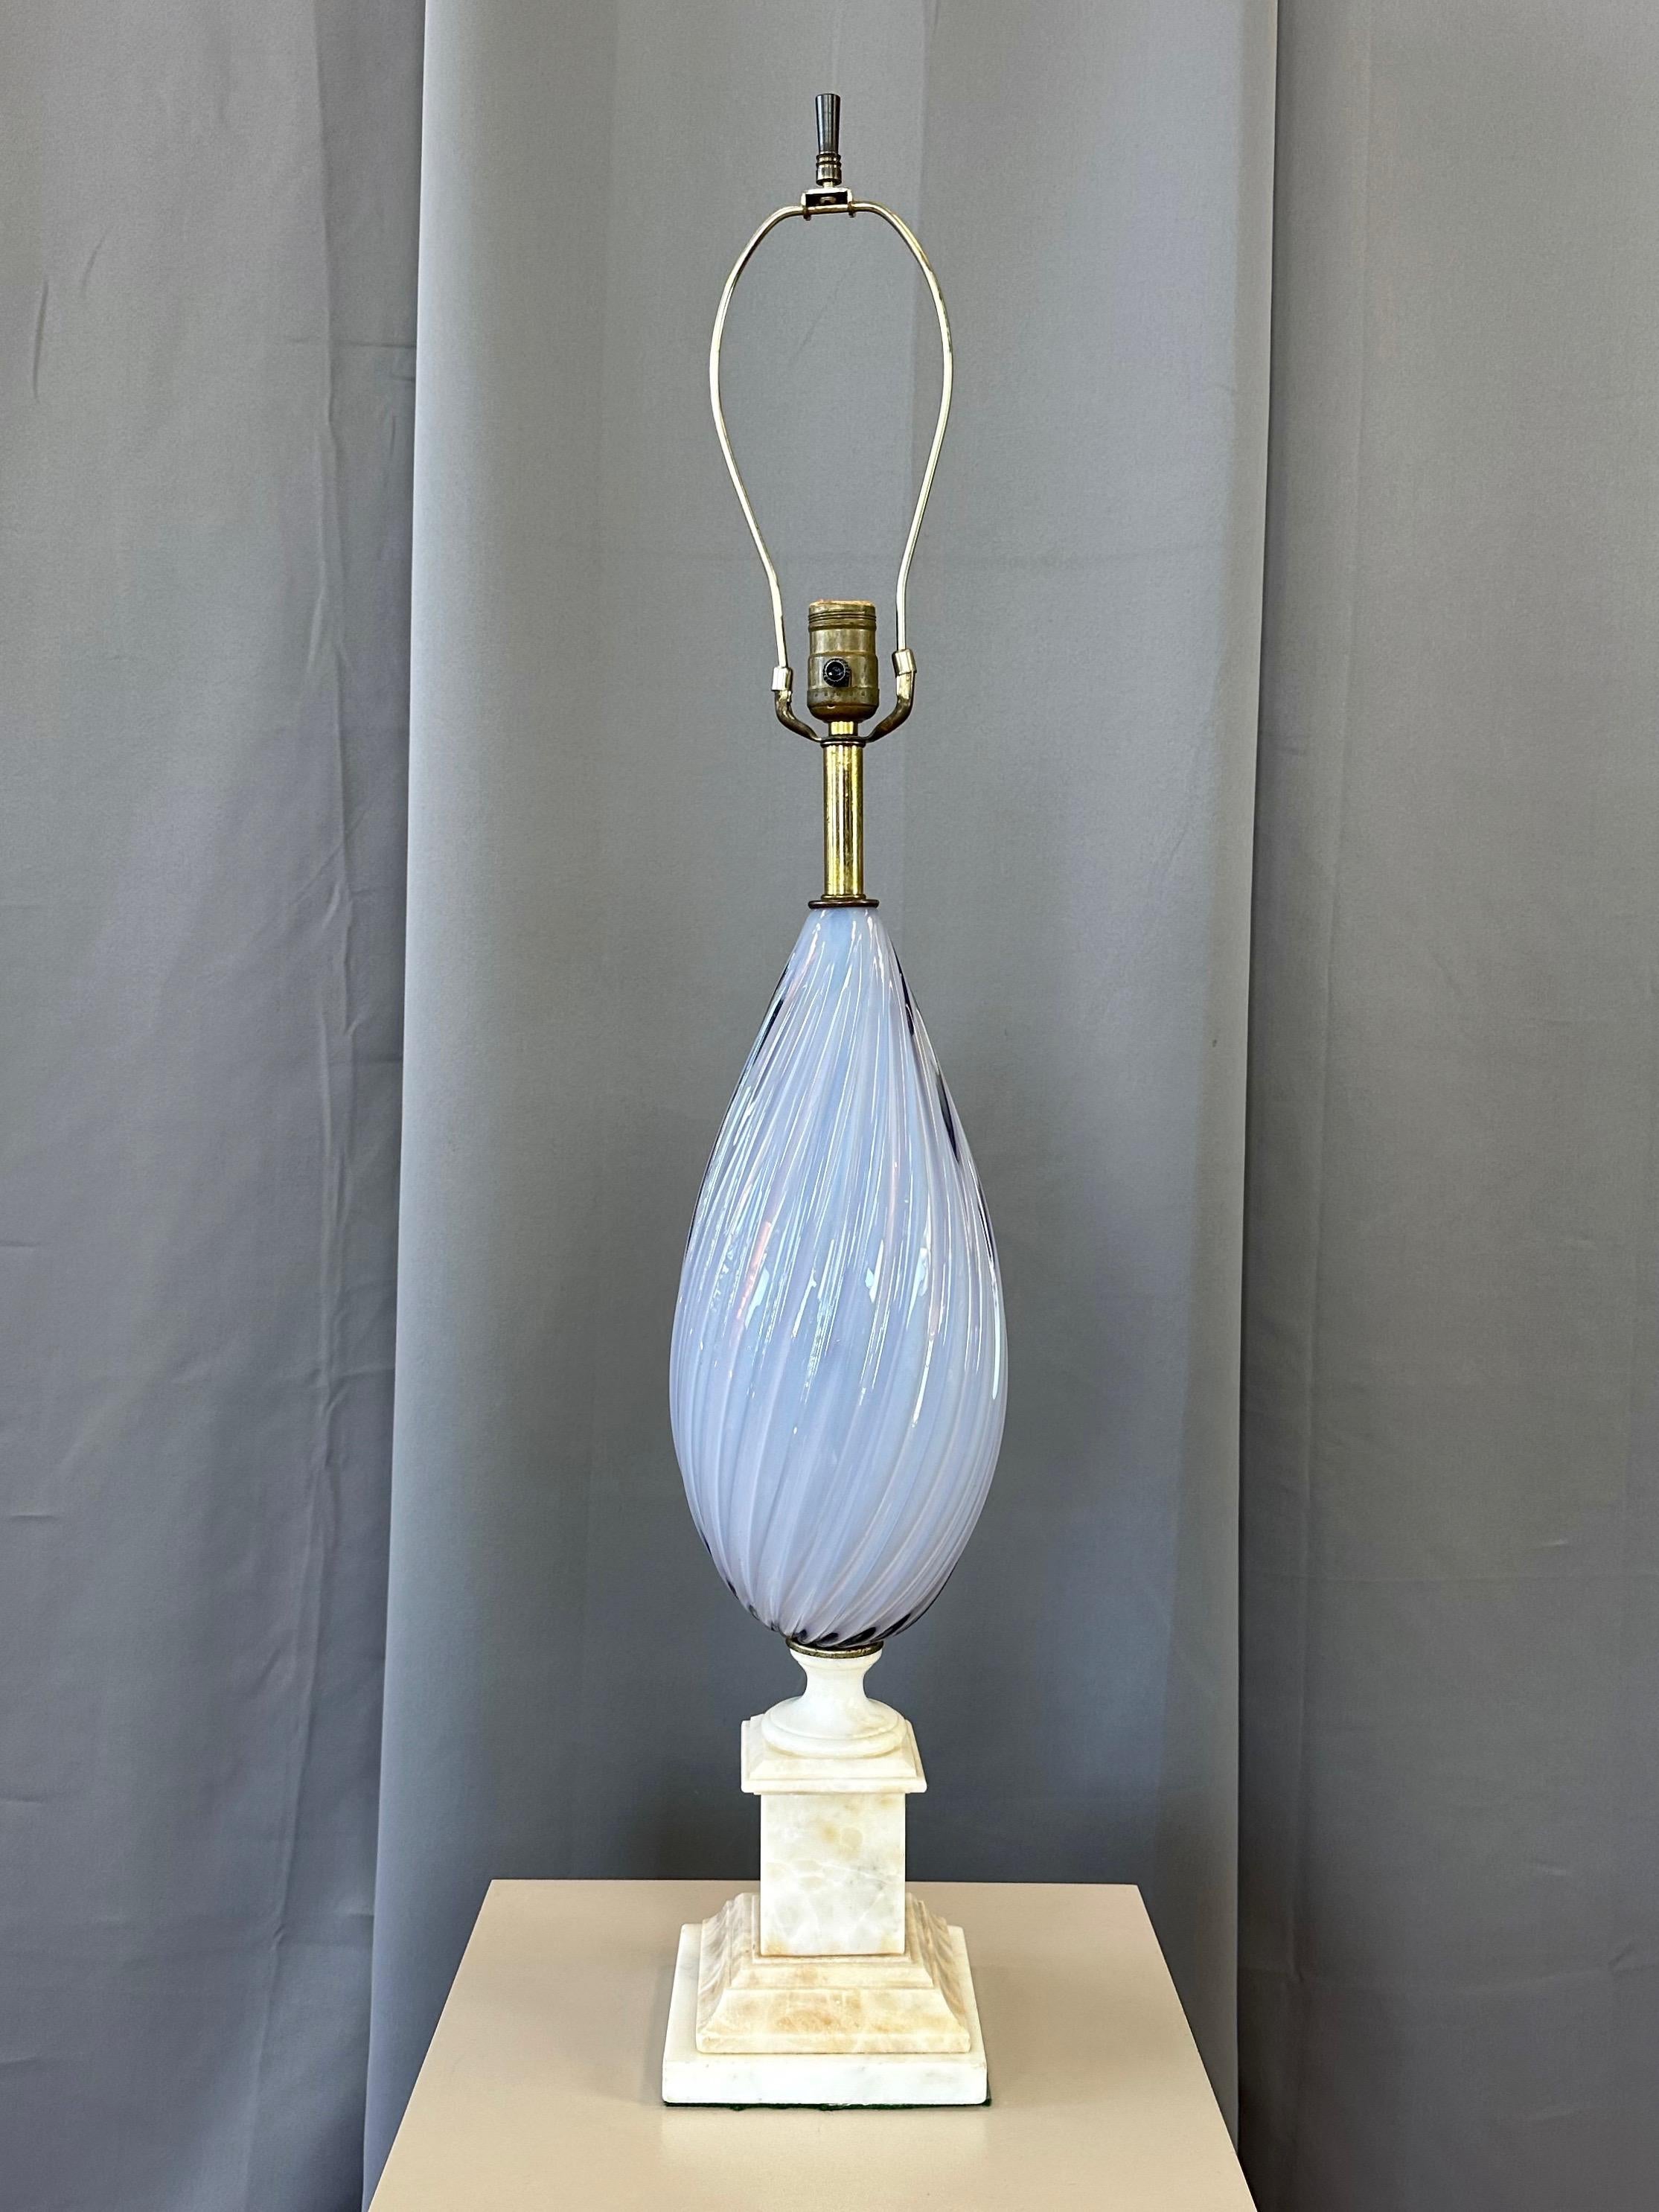 Magnifique lampe de table en verre de Murano de couleur pervenche sommerso, sur base en albâtre, datant de 1950.

Elegant corps en forme de goutte d'eau torsadée en verre soufflé à la main, d'une nuance absolument magnifique de pervenche pâle,